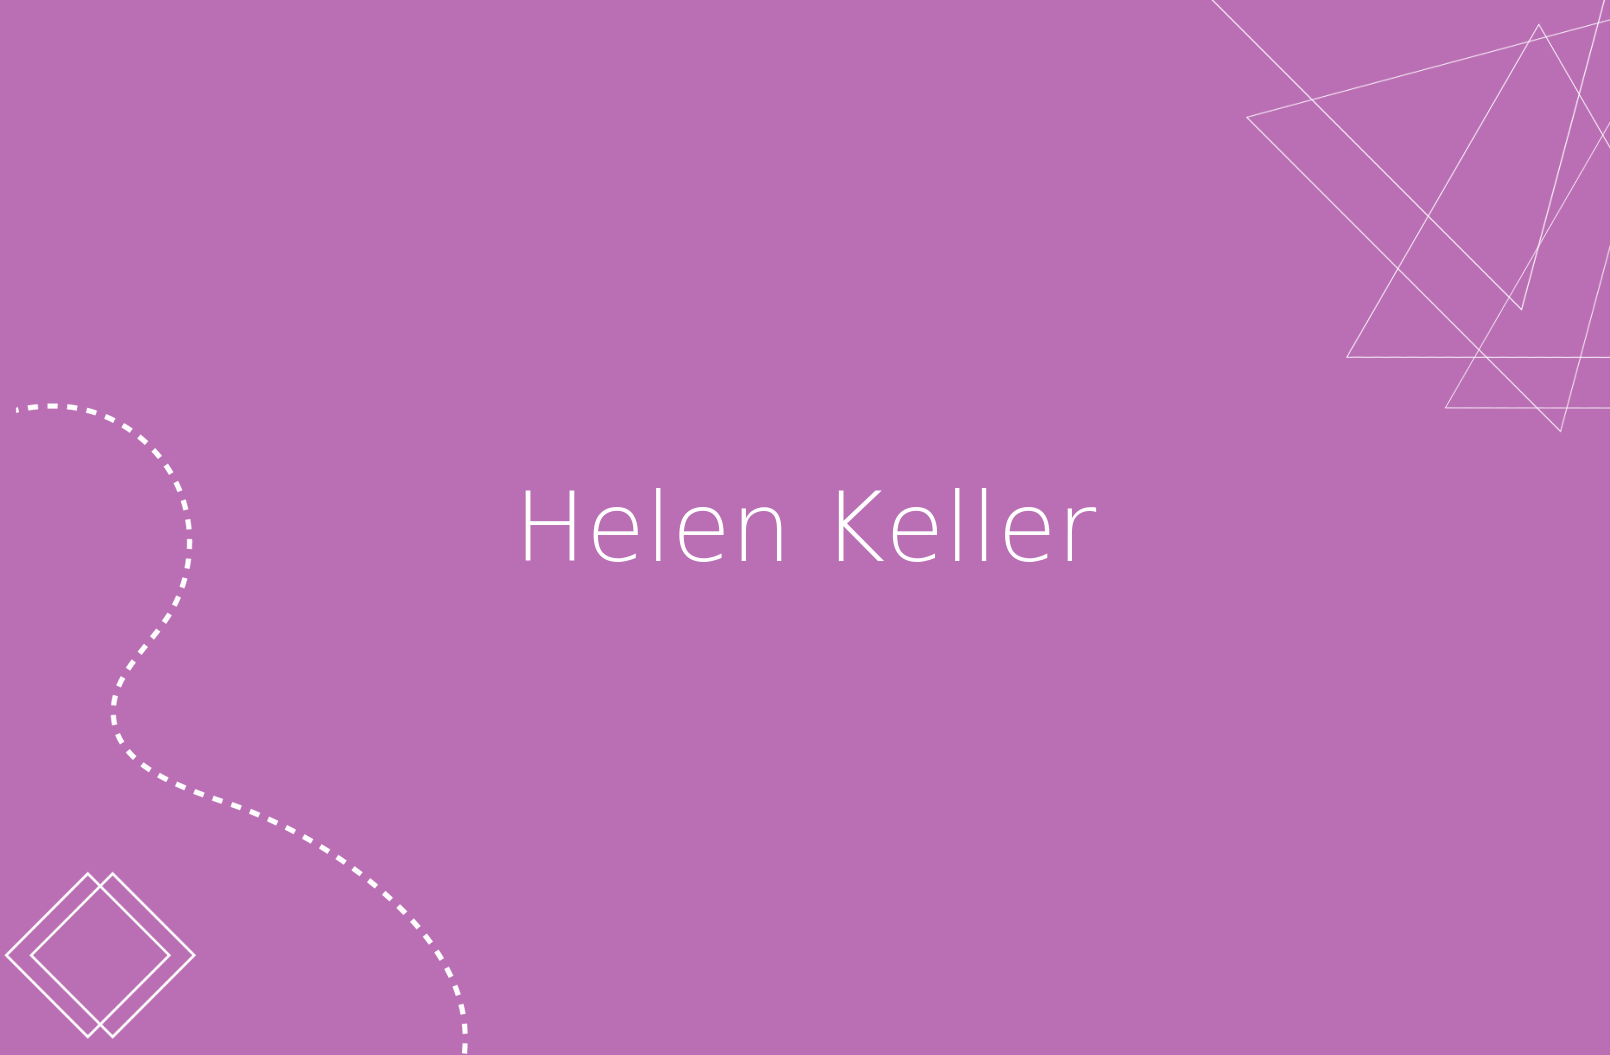 Biografía de un ejemplo maravilloso, Helen Keller